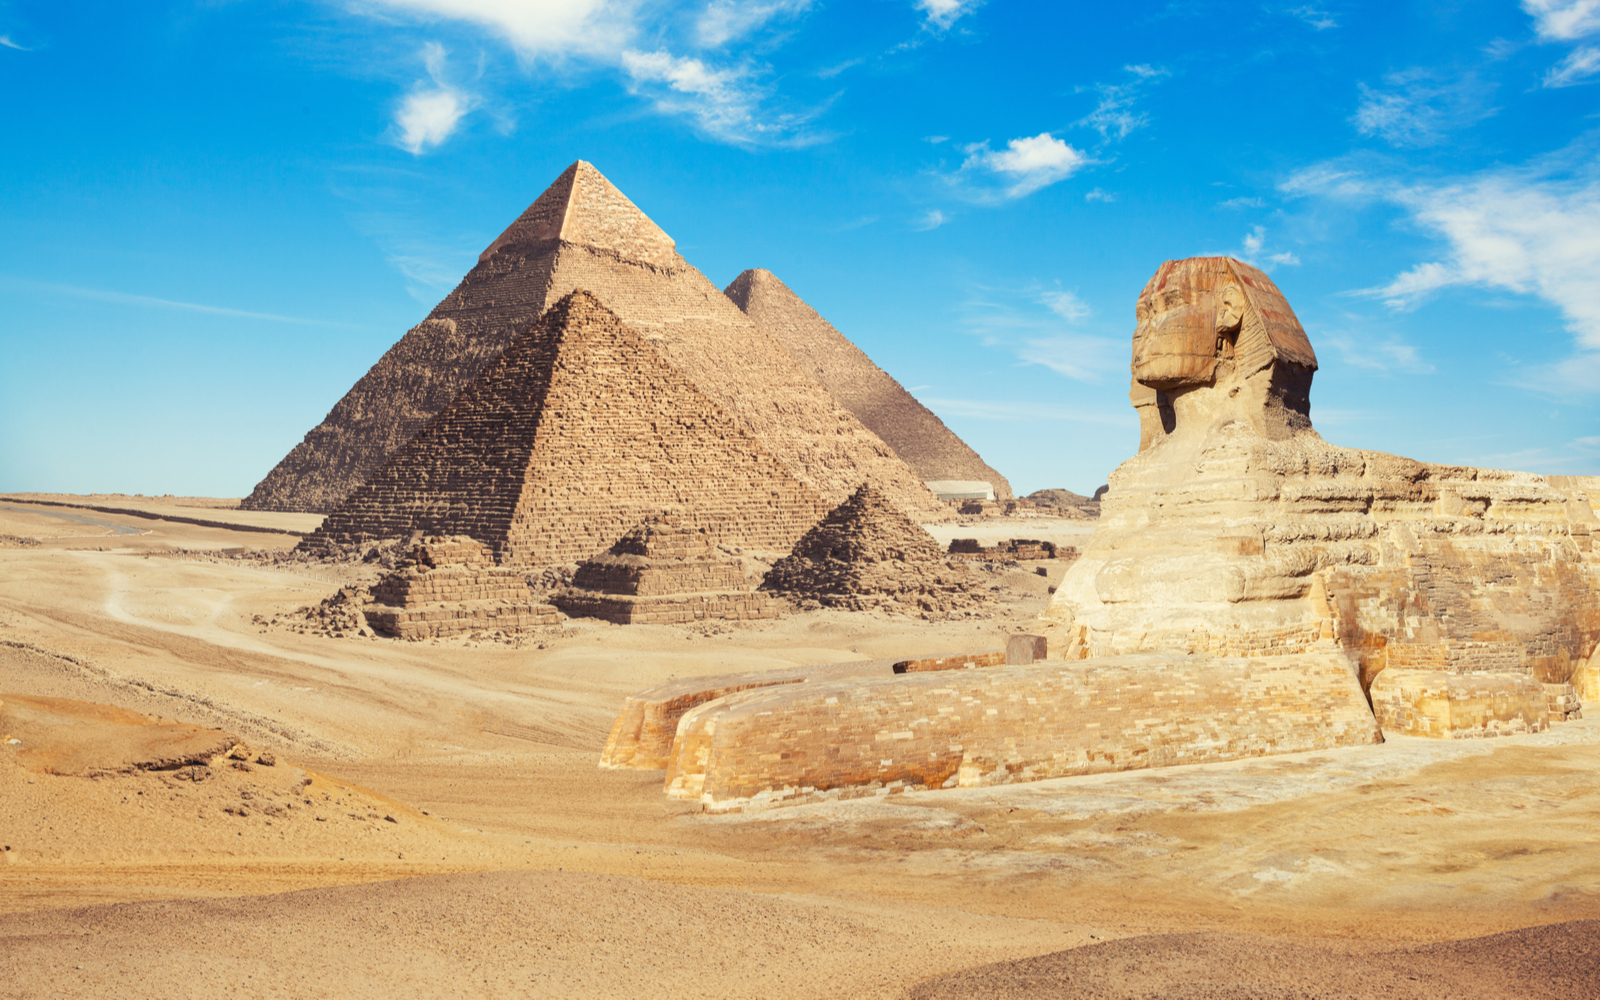 Is Egypt Safe? | Travel Tips & Safety Concerns